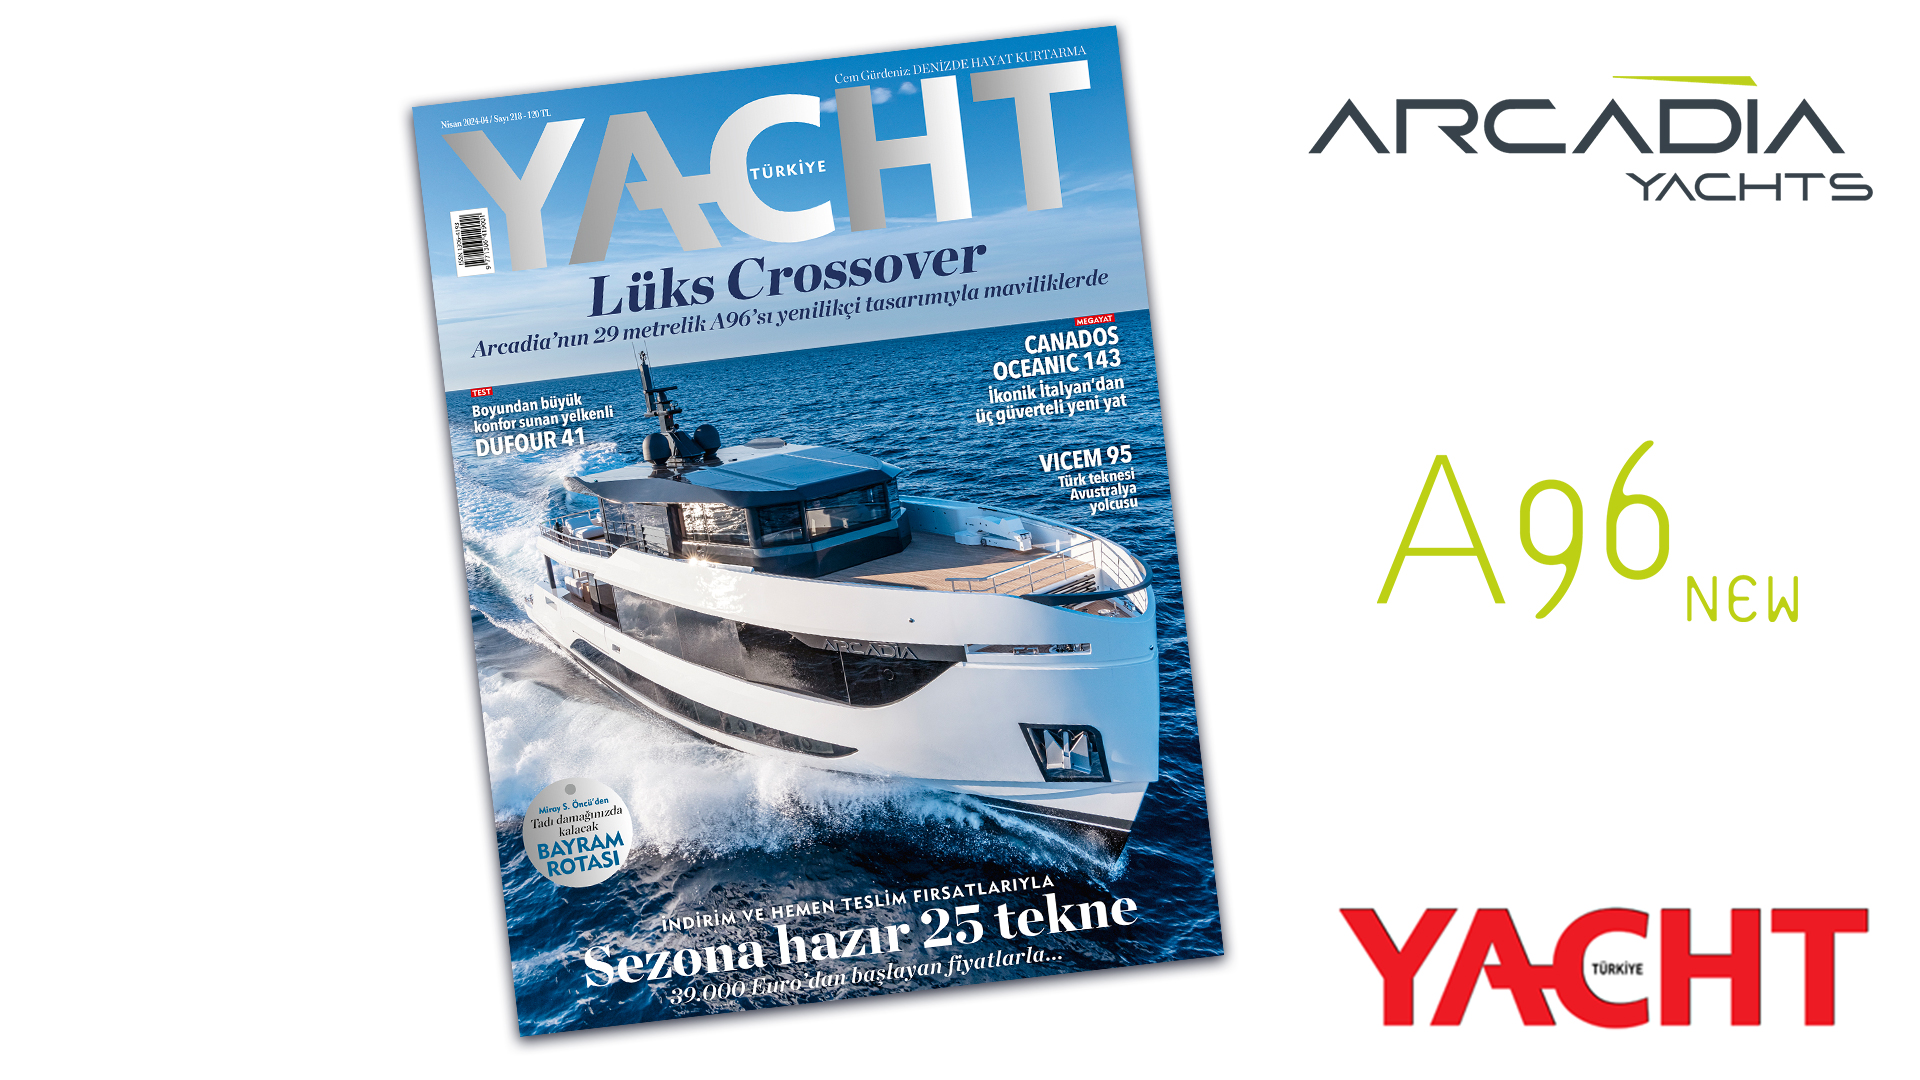 Yacht Türkiye 2024 - Arcadia'nın 29 metrelik A96'sı yenilikçi tasarımıyla maviliklerde